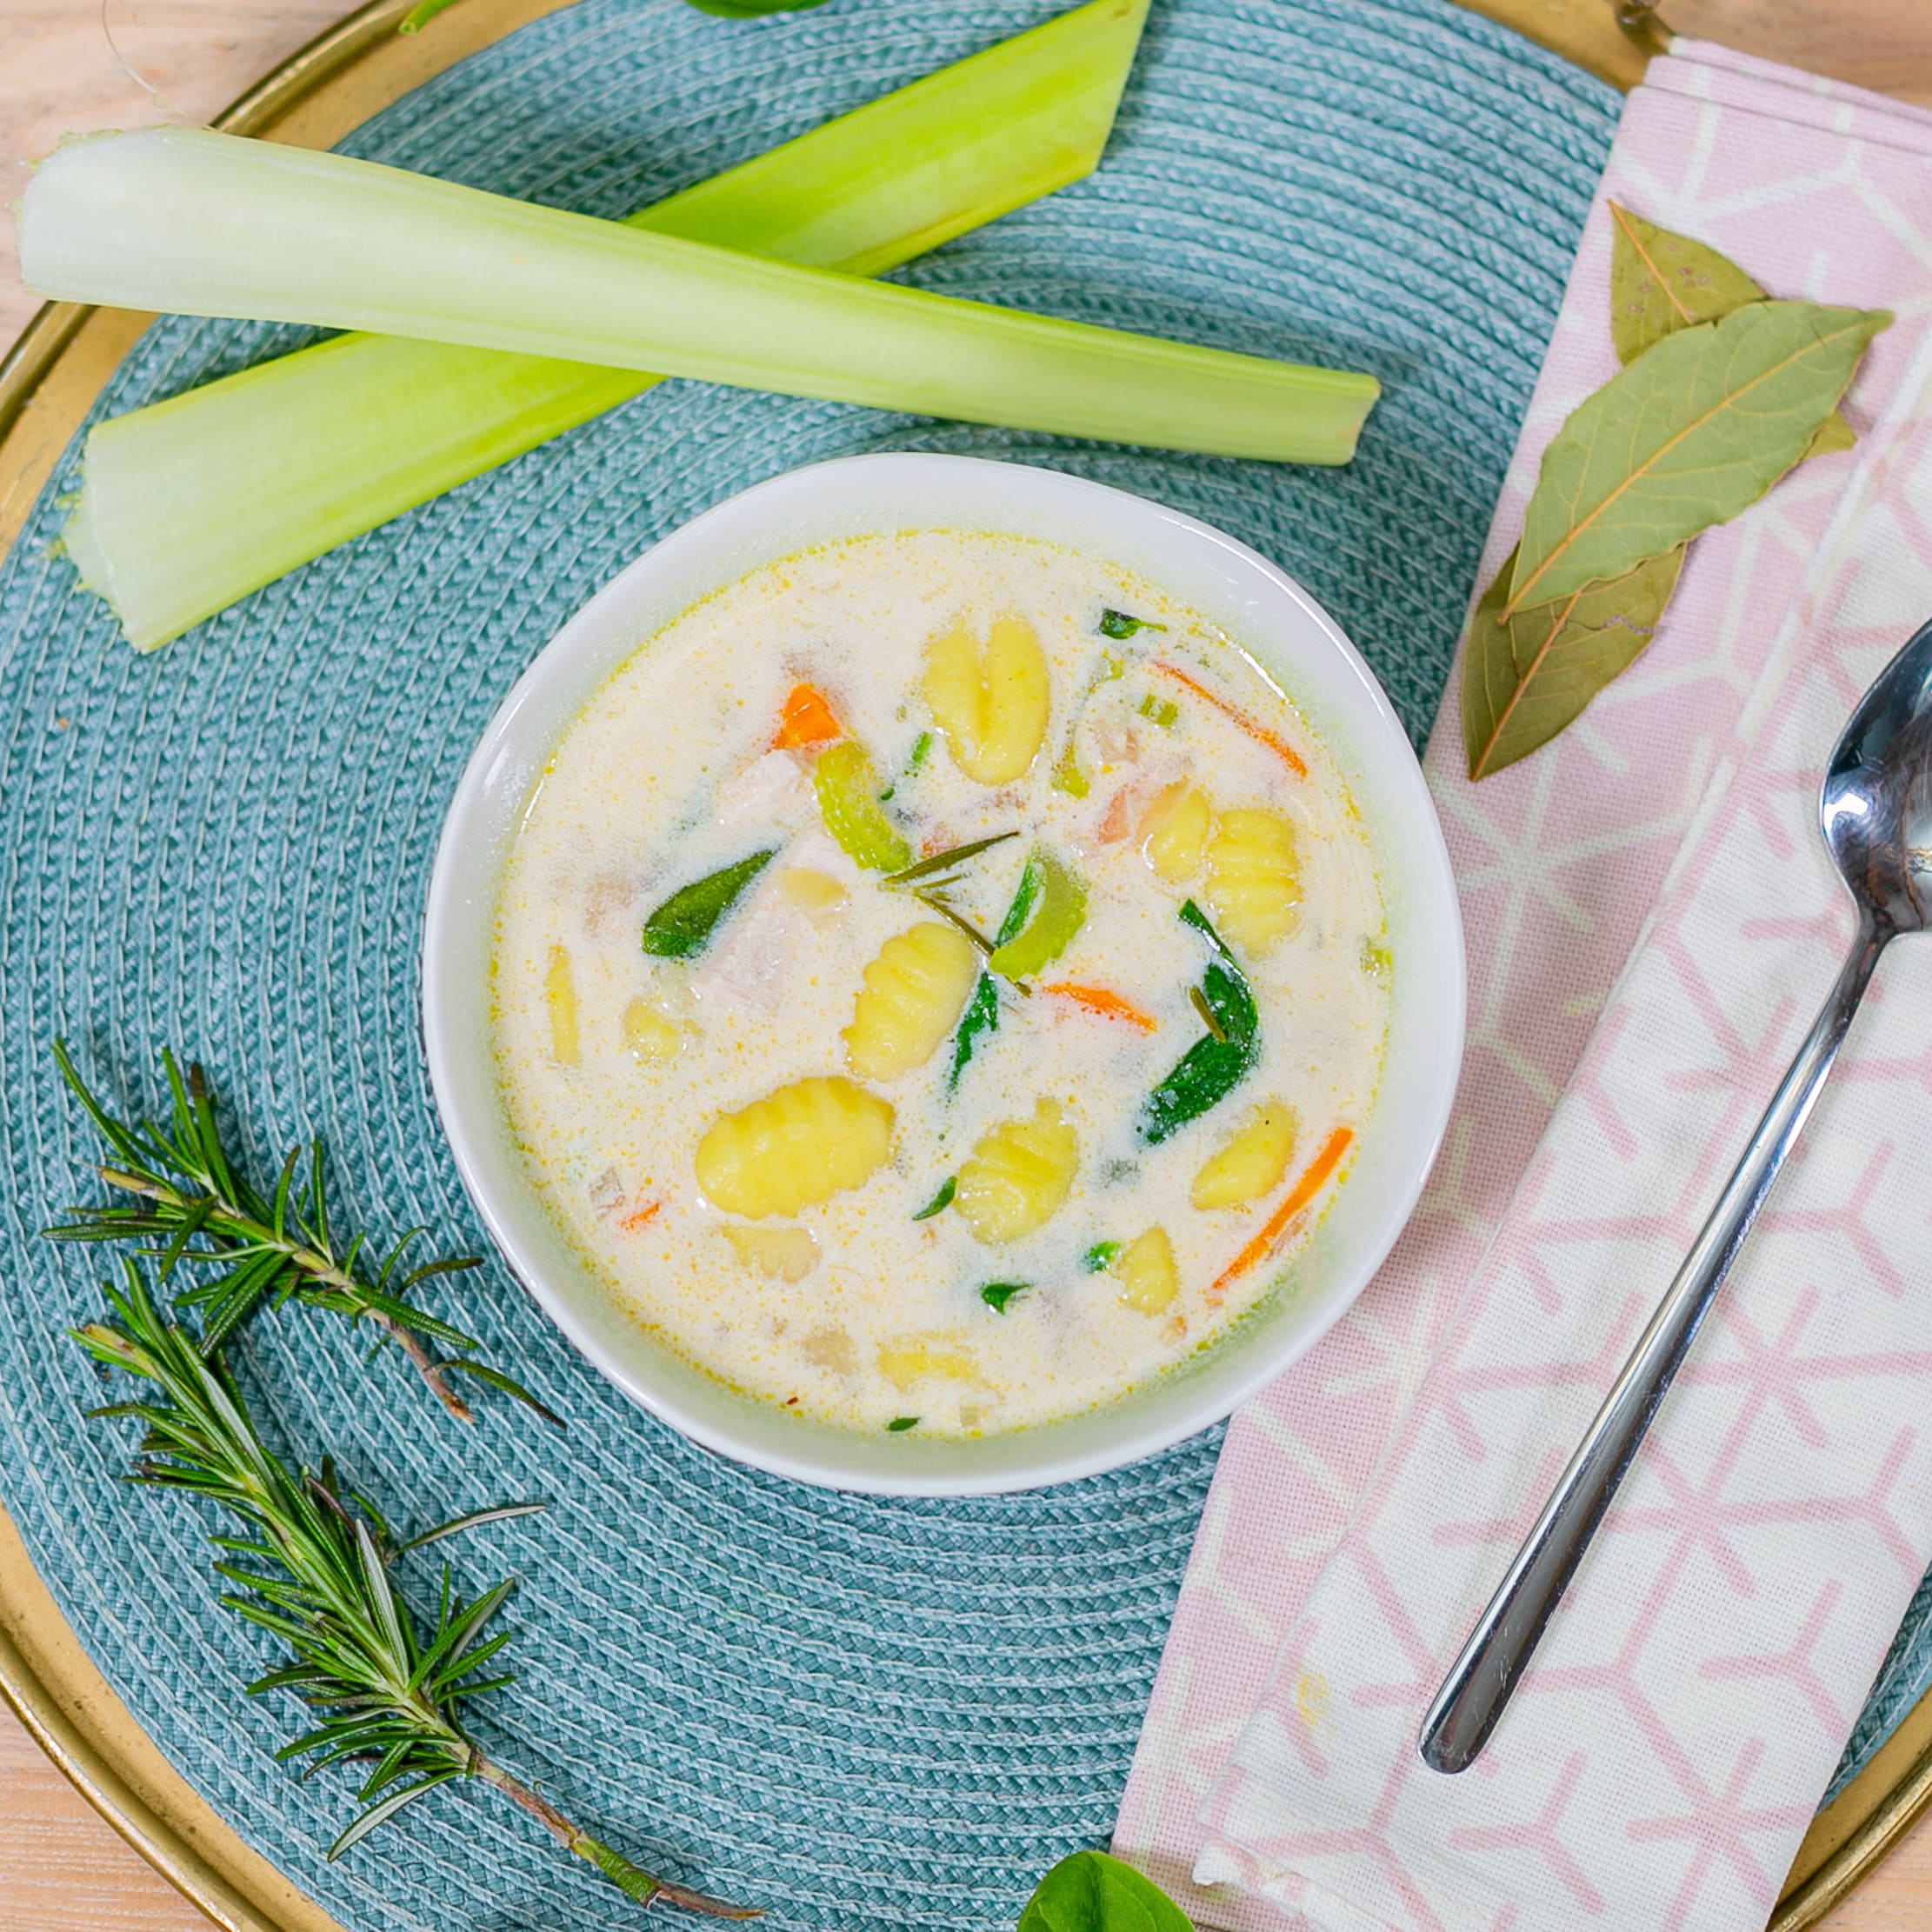 крем суп из тыквы со сливками рецепт классический с фото пошагово в домашних условиях | Дзен